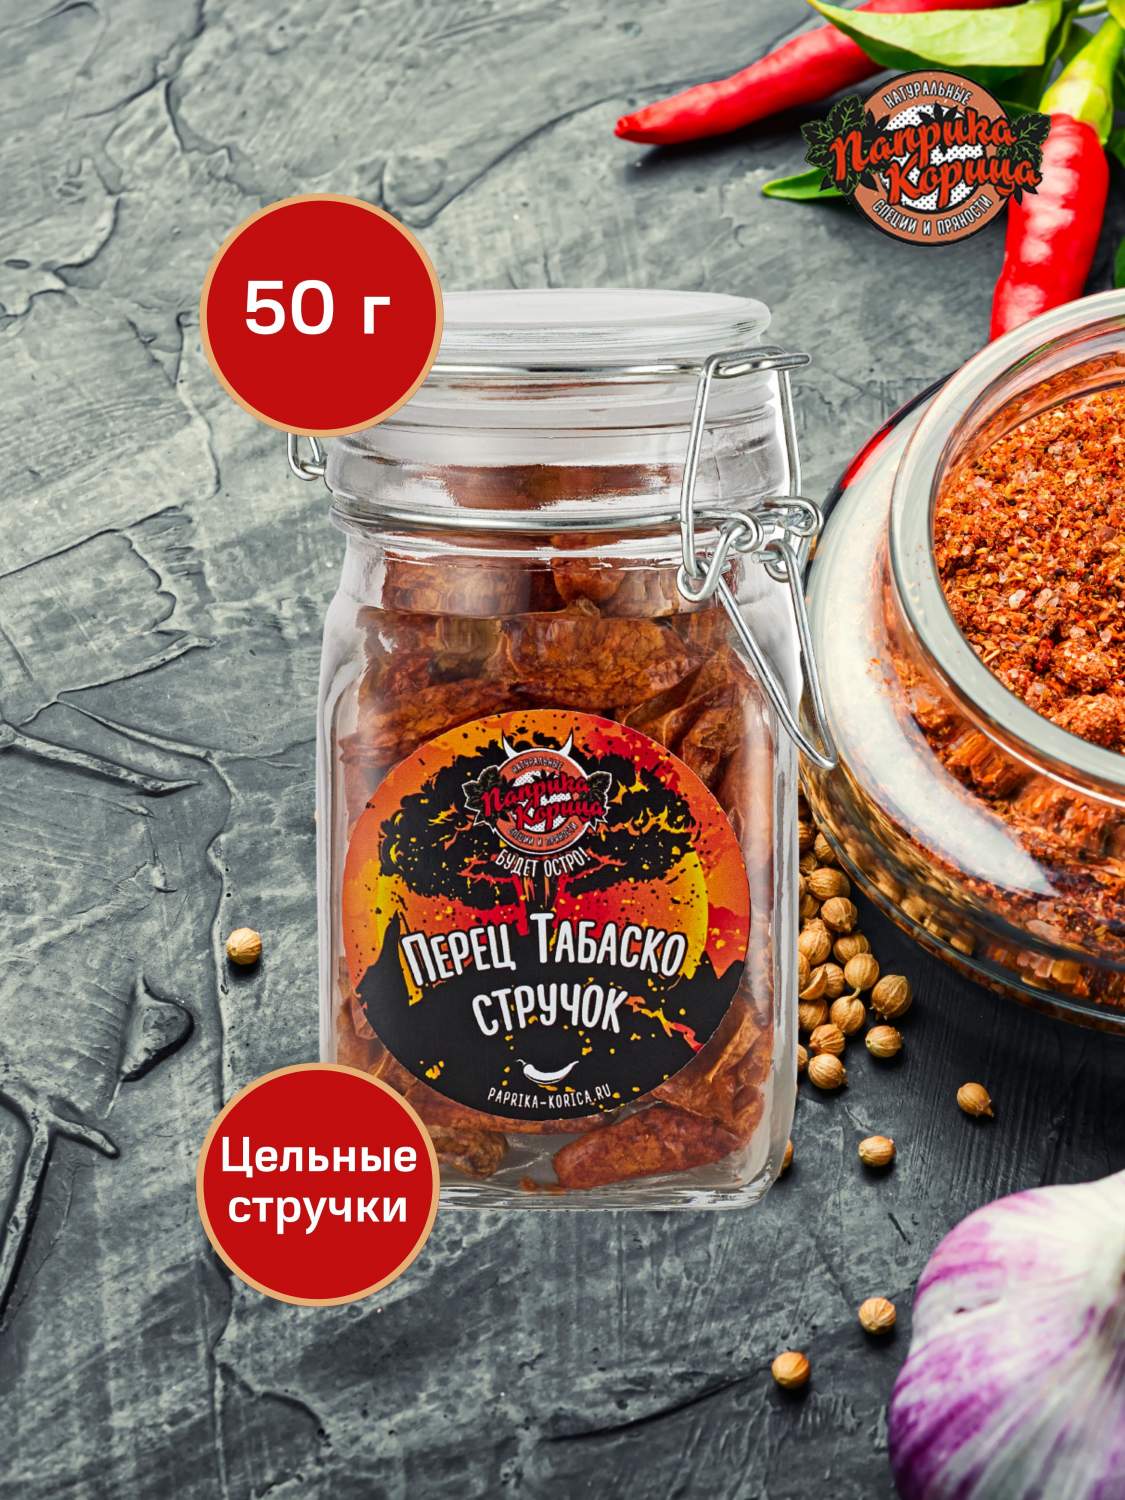 Купить перец Табаско 50гр. стручок цельный в стеклянной банке, цены вМоскве на Мегамаркет